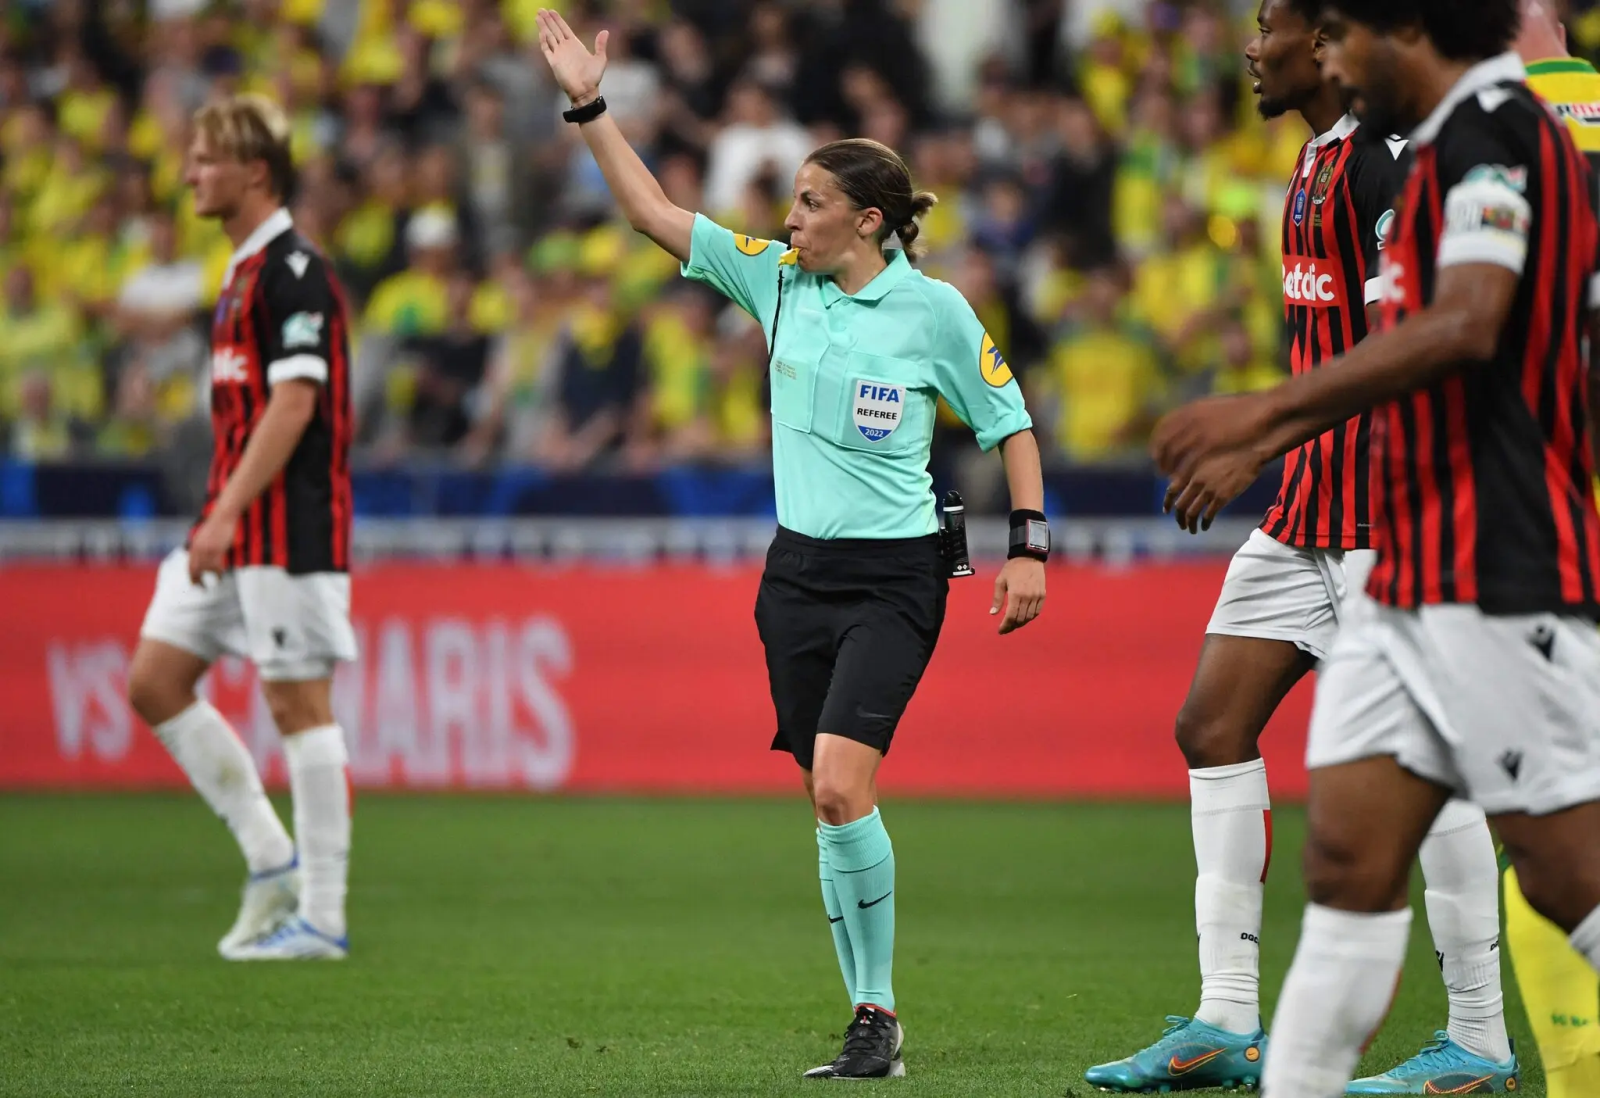 Lần đầu tiên trong lịch sử các kỳ World Cup trọng tài nữ sẽ cầm còi